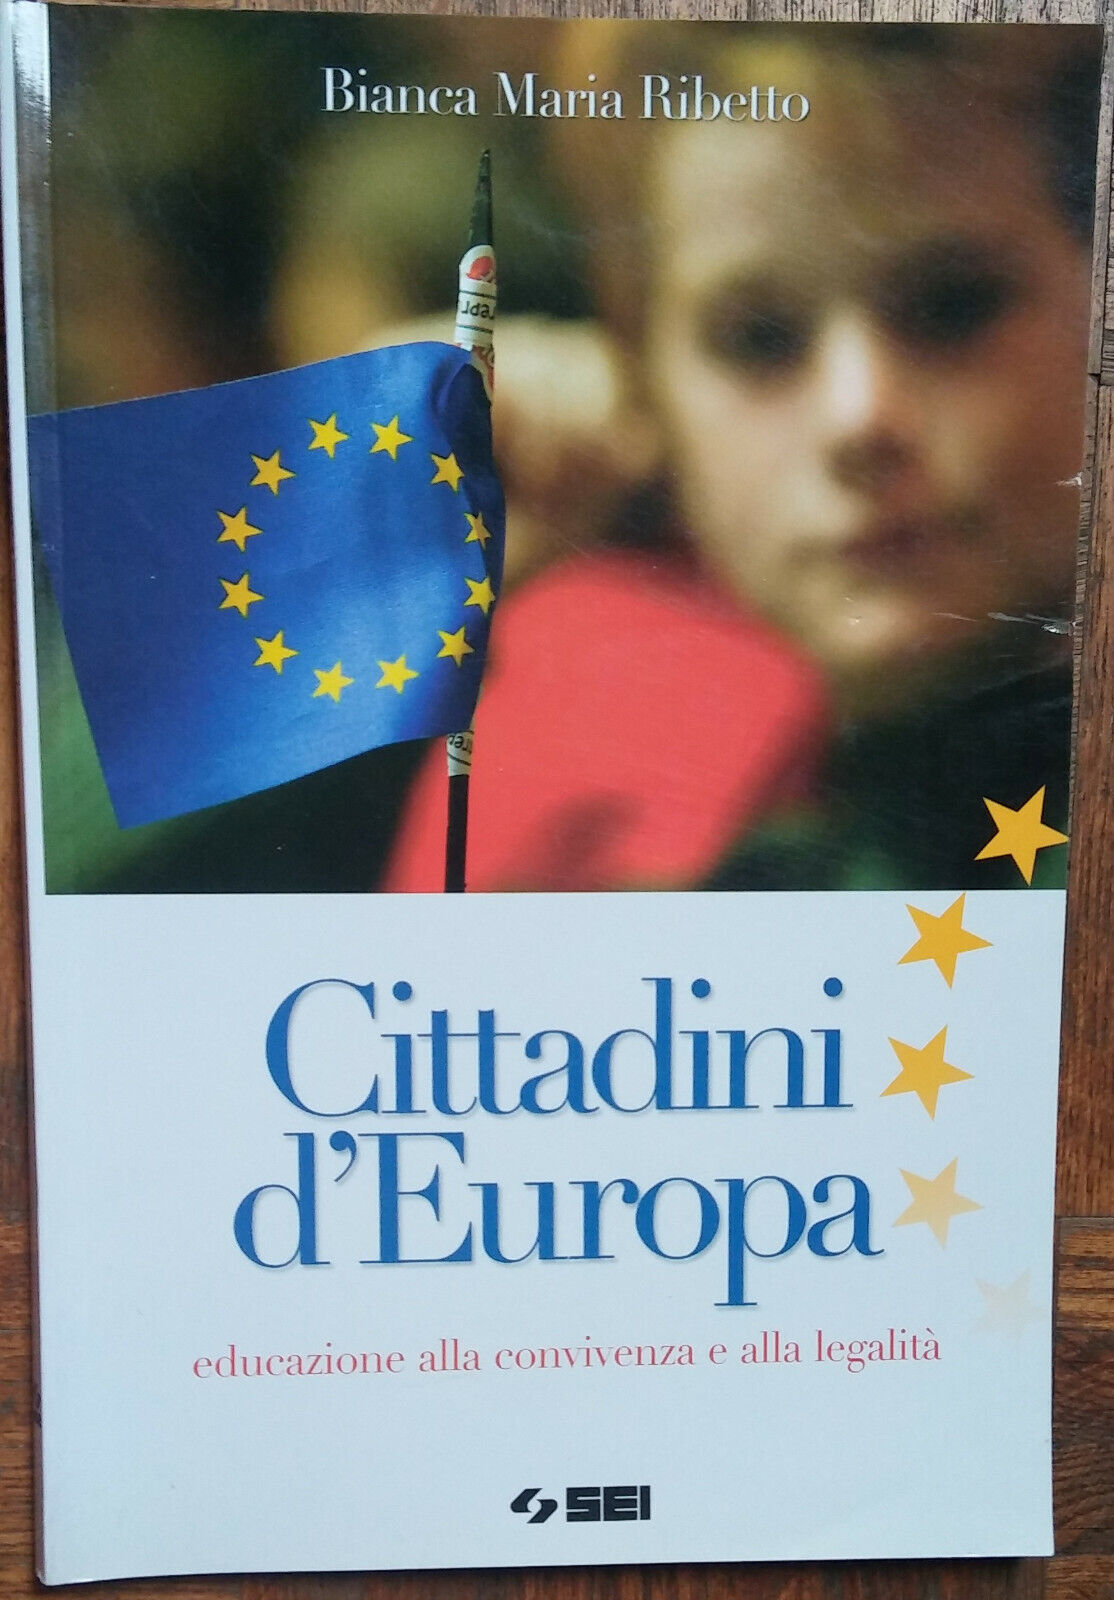 Cittadini d'Europa - Bianca Maria Ribetto - SEI,2008 - R